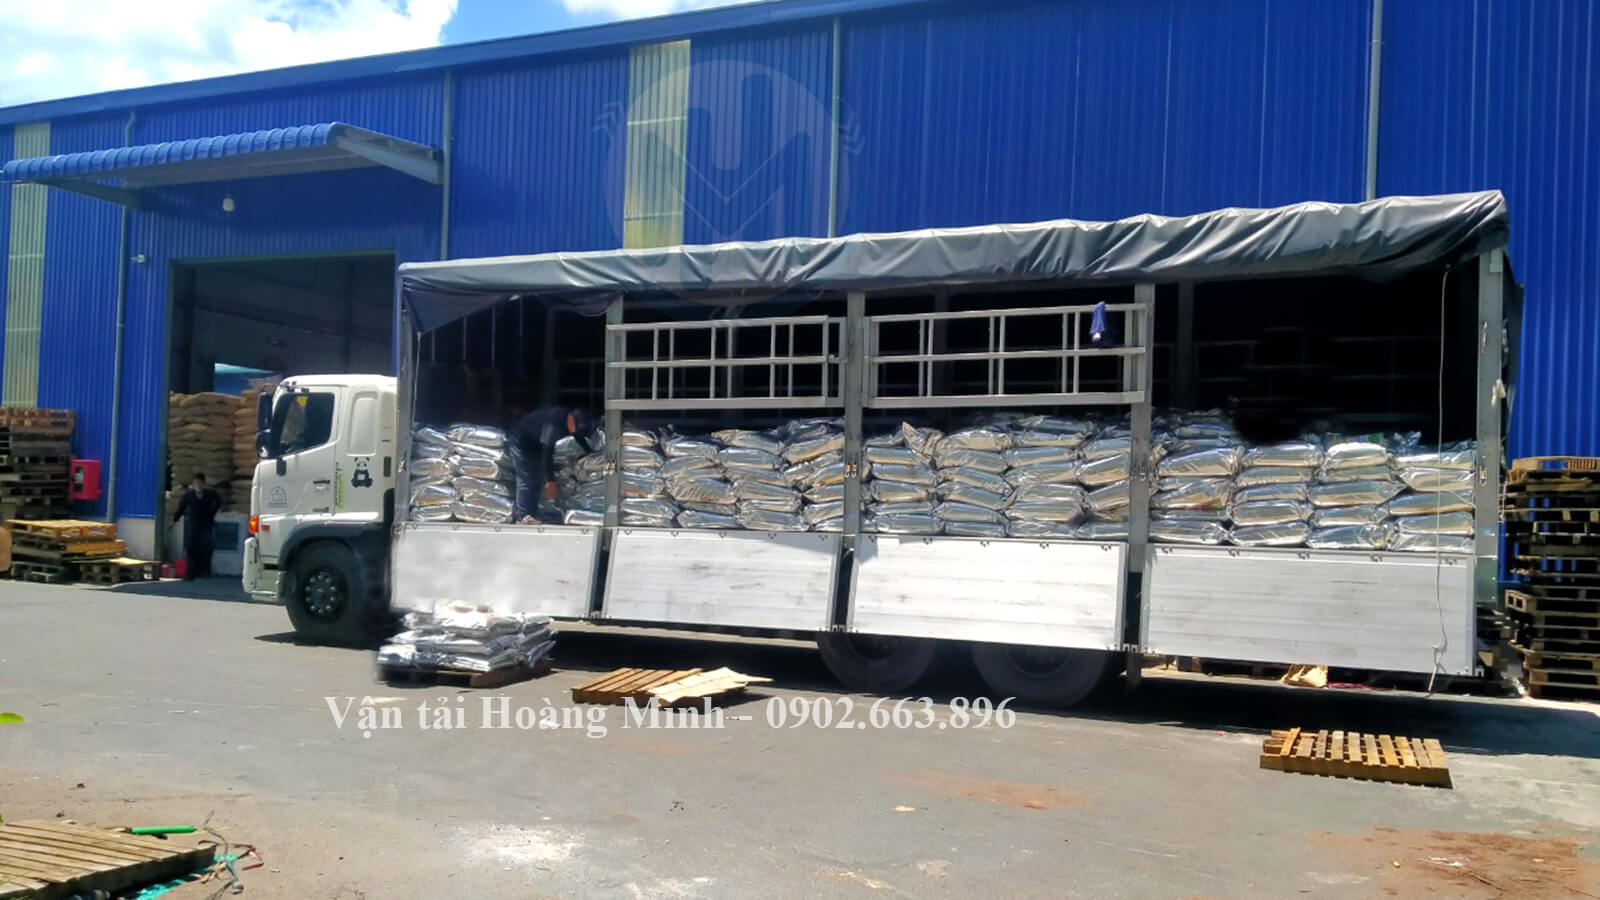 Xe tải Hoàng Minh đang được sắp xếp vận chuyển hàng hoá cho khách tại kho xưởng Kiên Giang.jpg